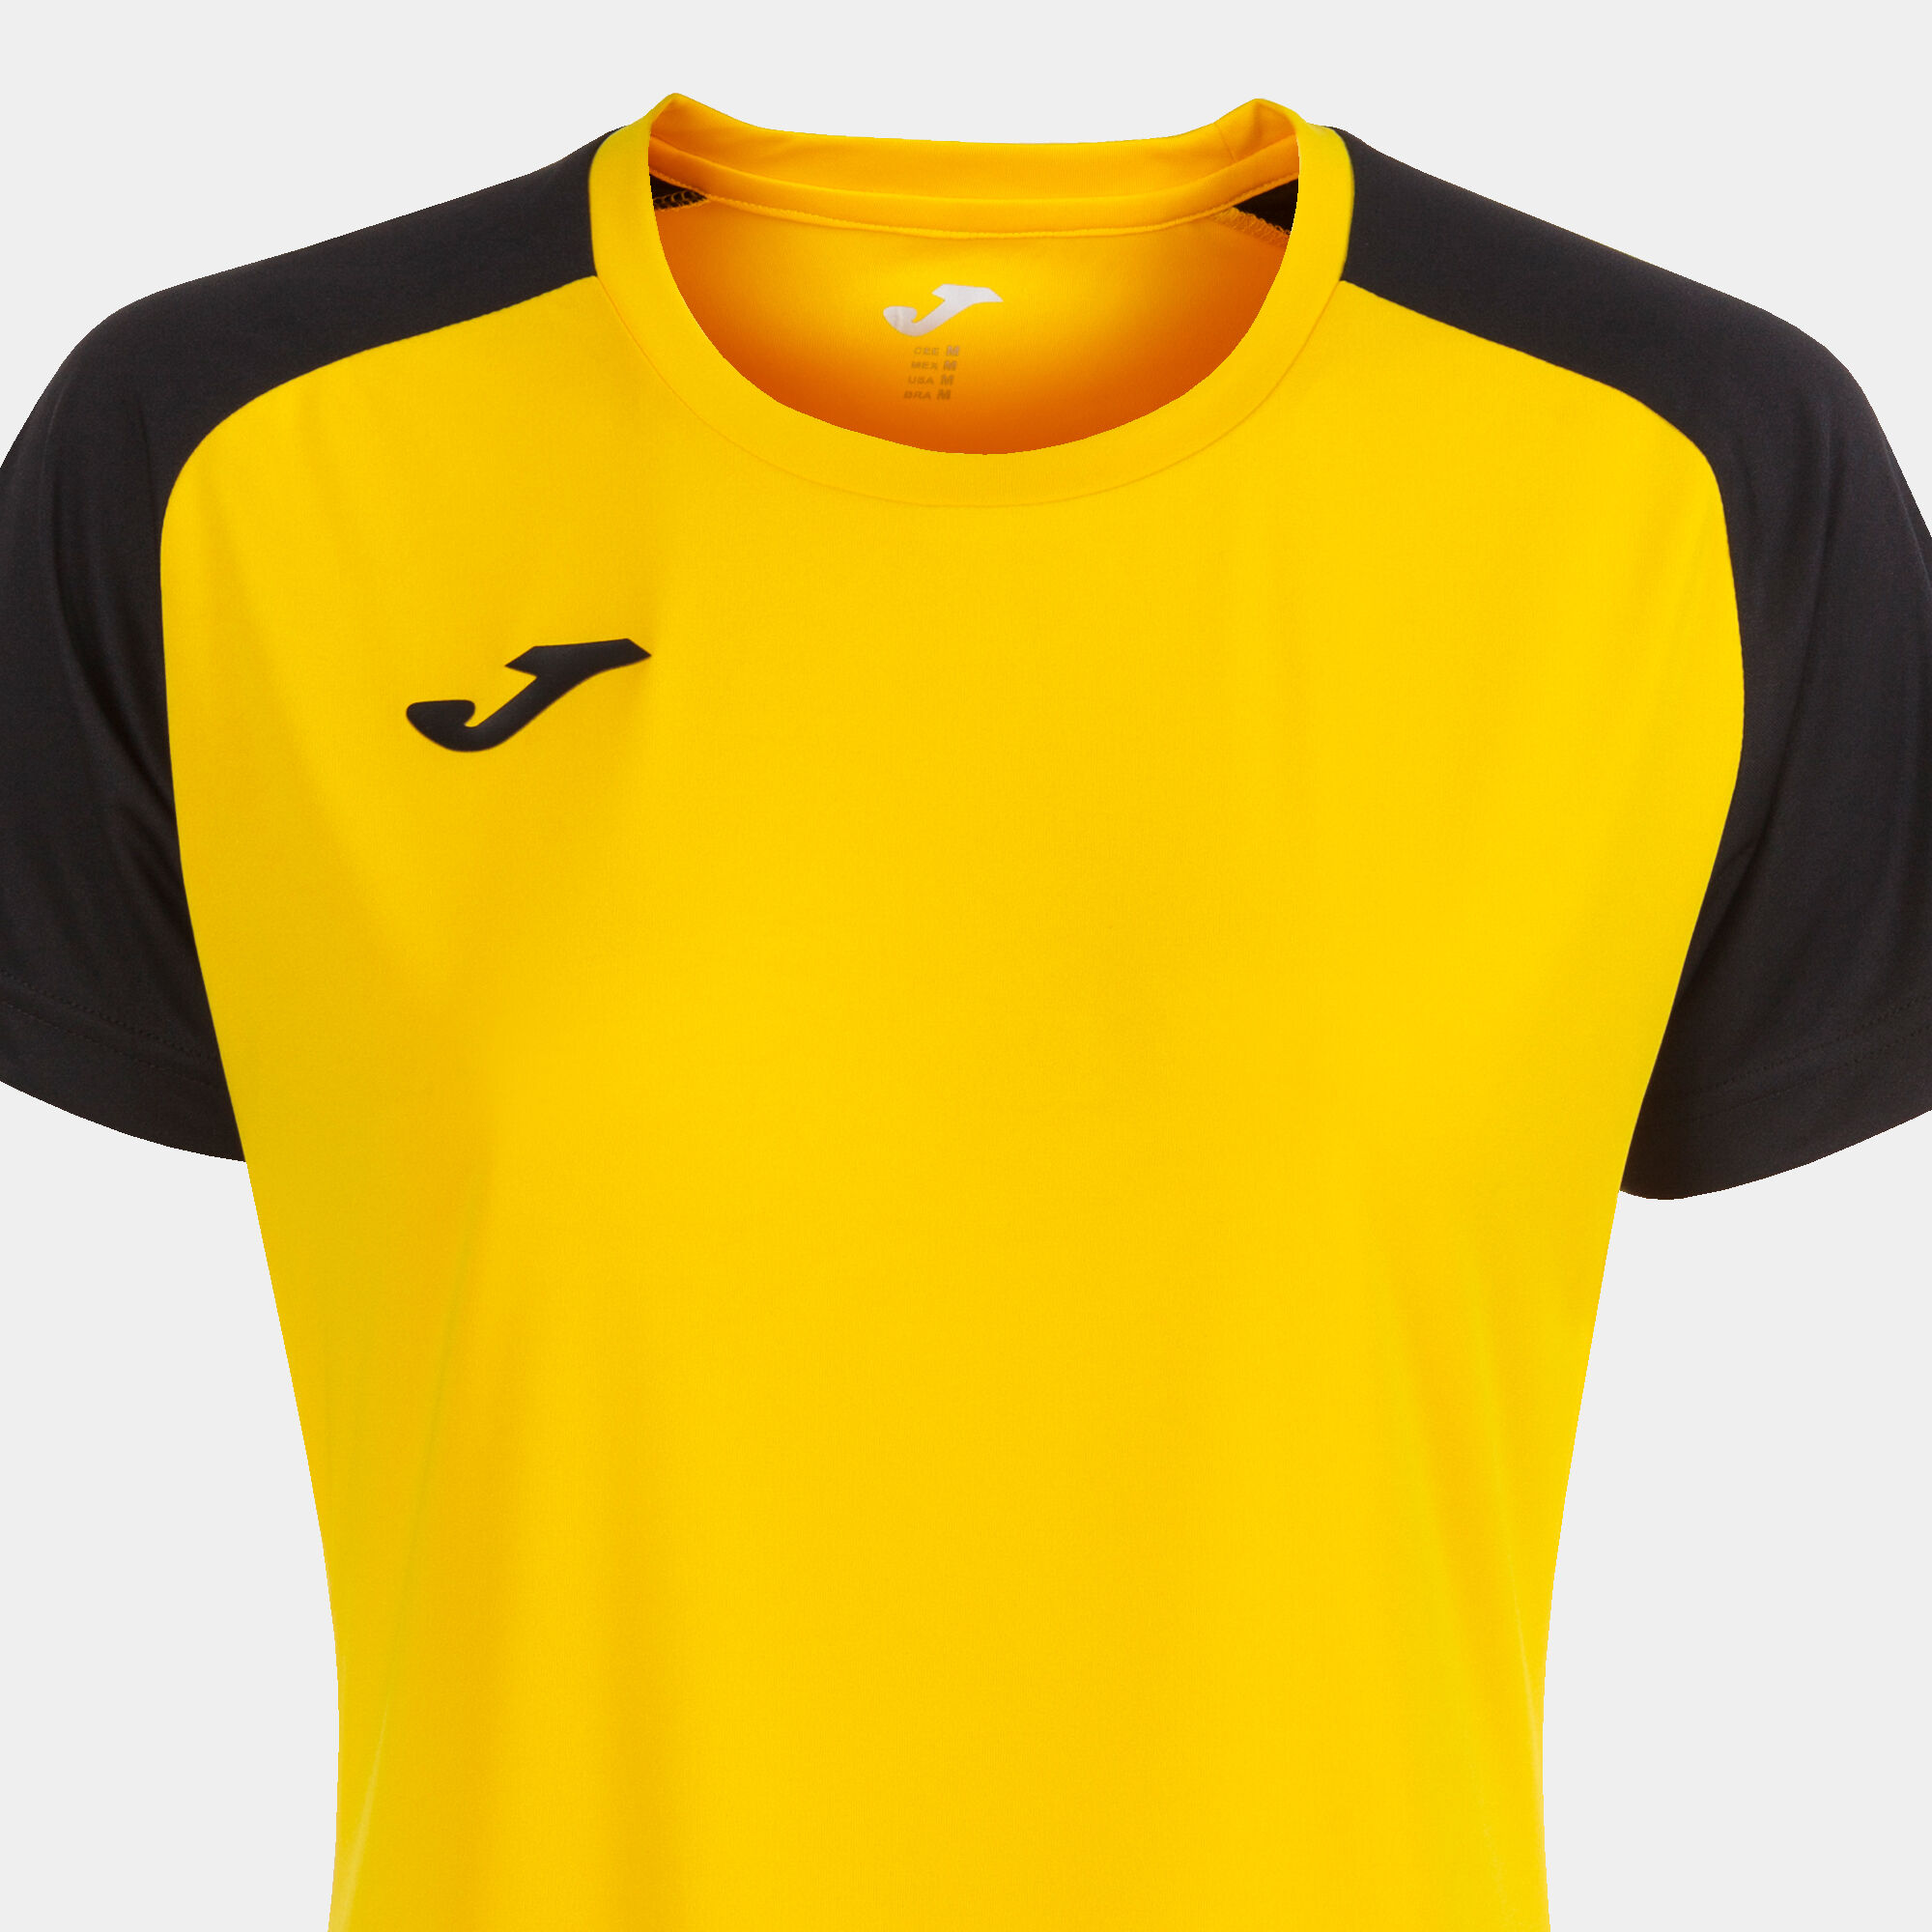 Camiseta manga corta mujer Academy IV amarillo negro